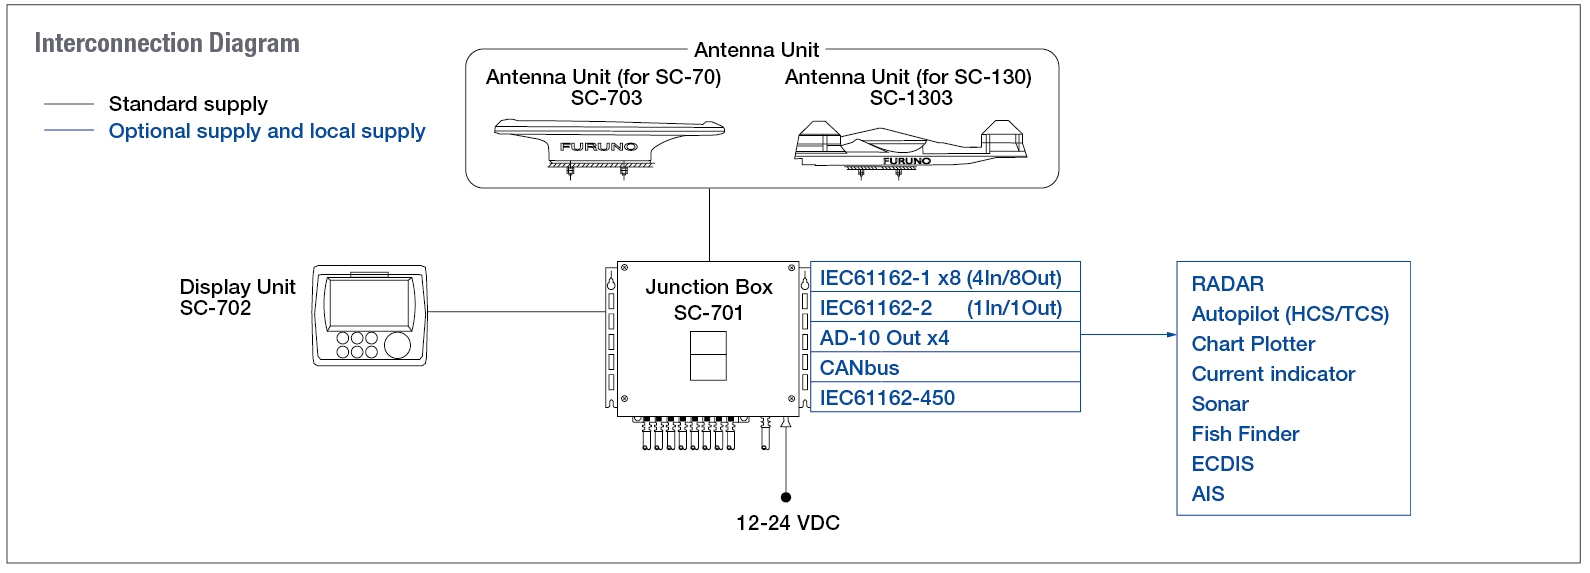 interconnection diagram de la SC70